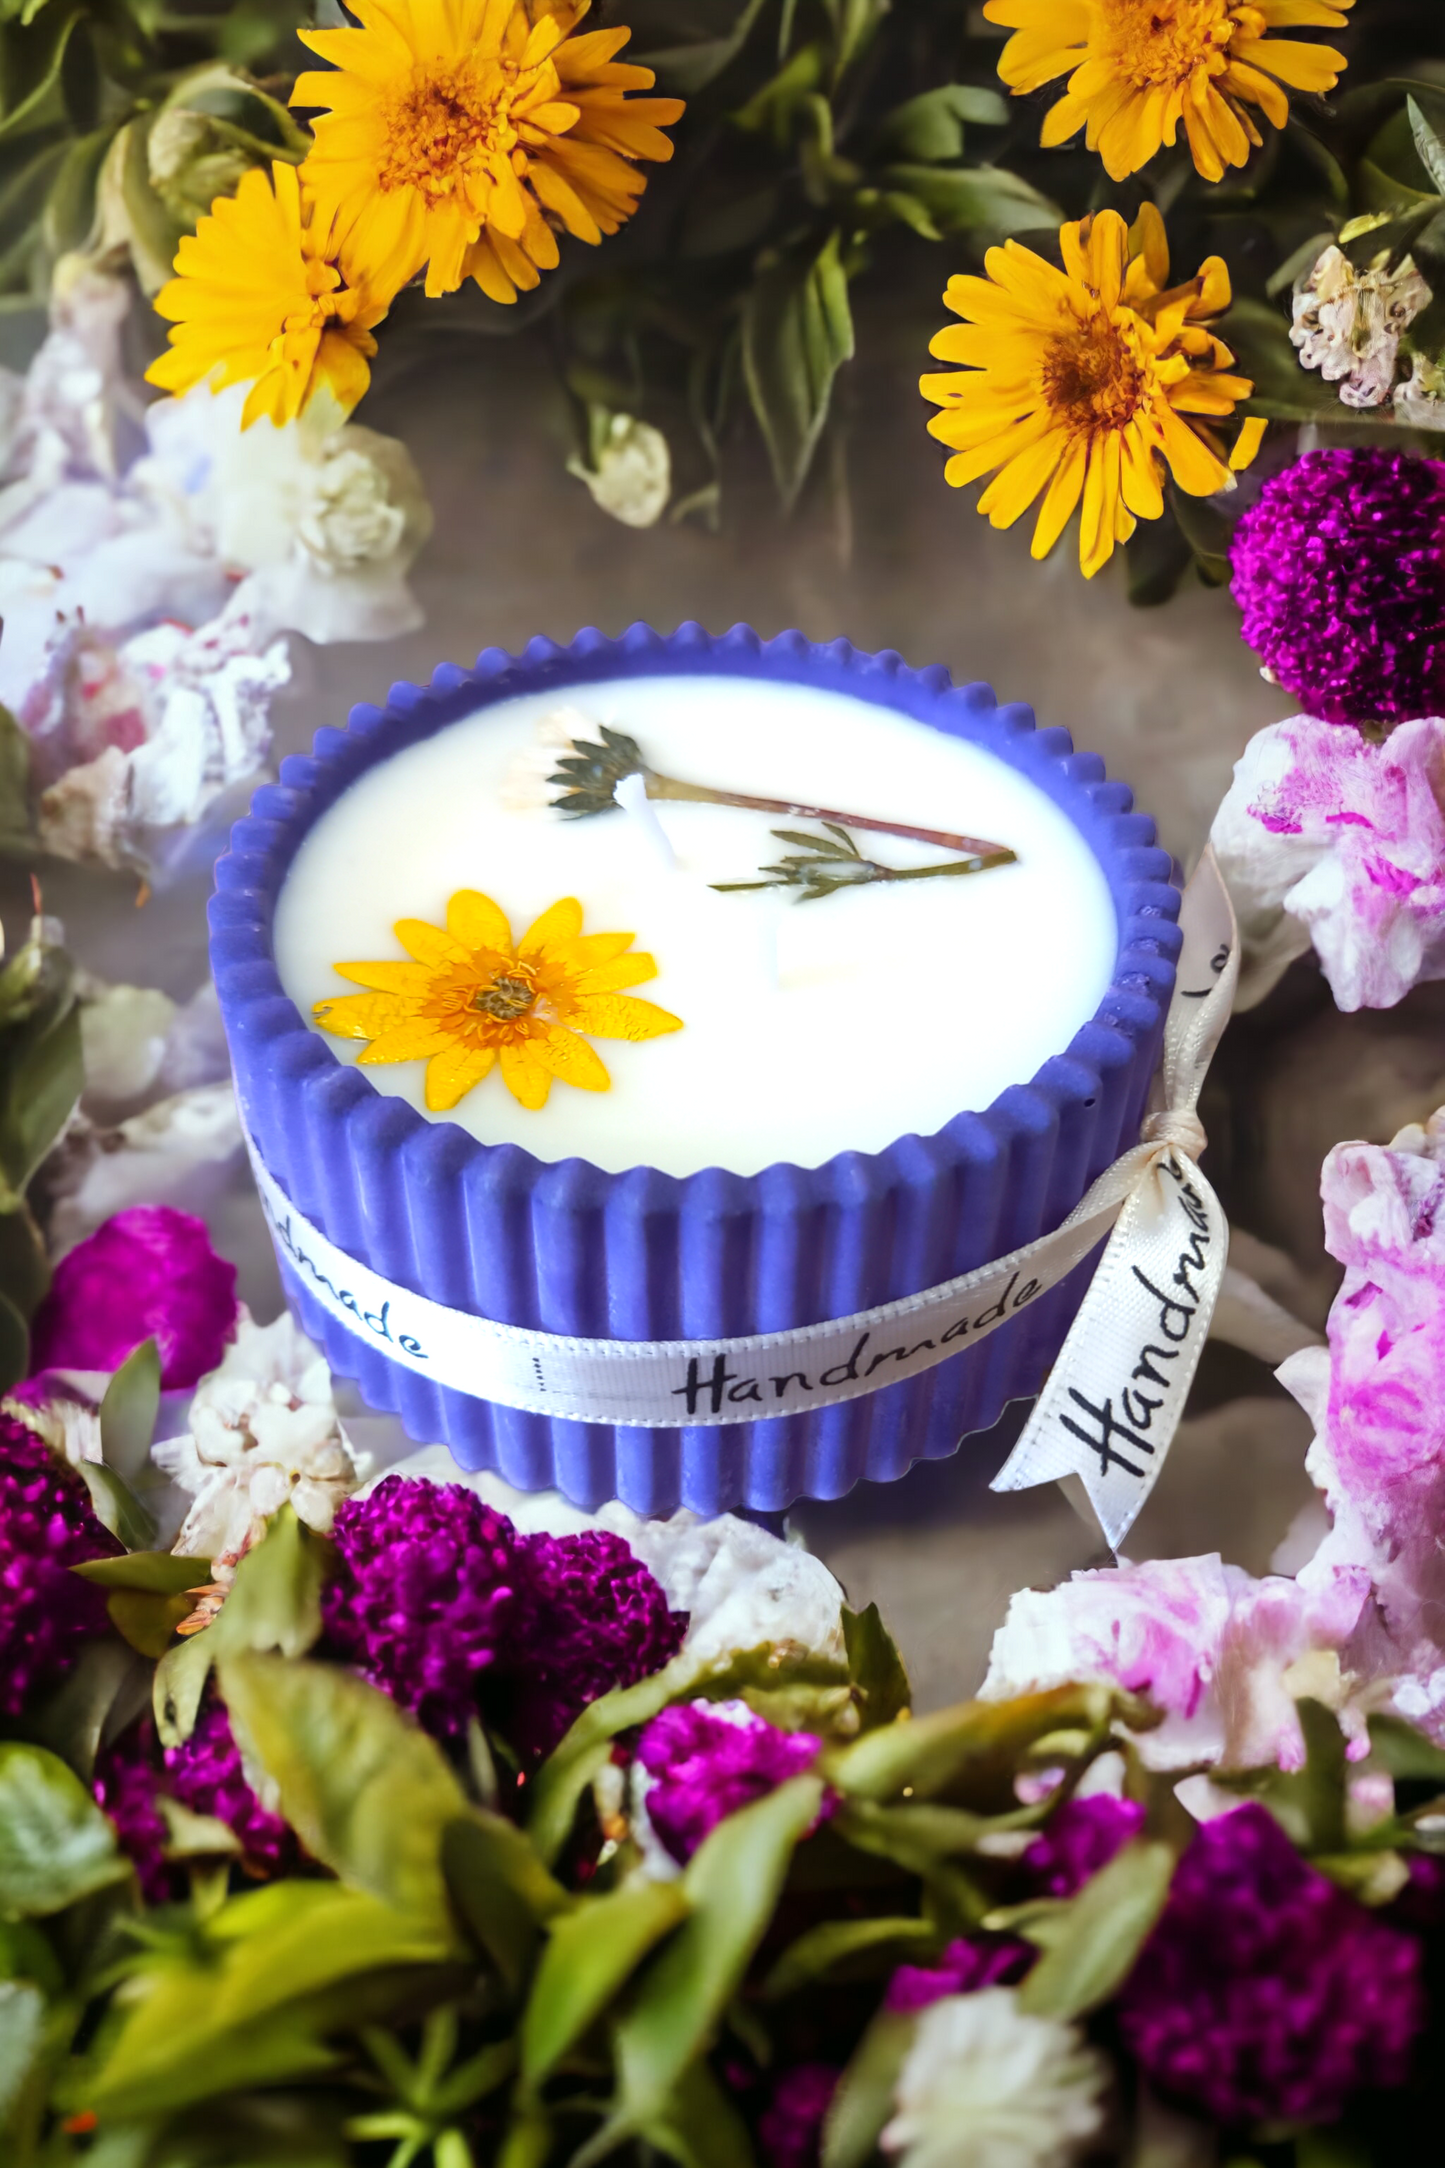 Candele decorate con fiori naturali in vasetti di ceramica fatti a mano - Bottega delle creazioni